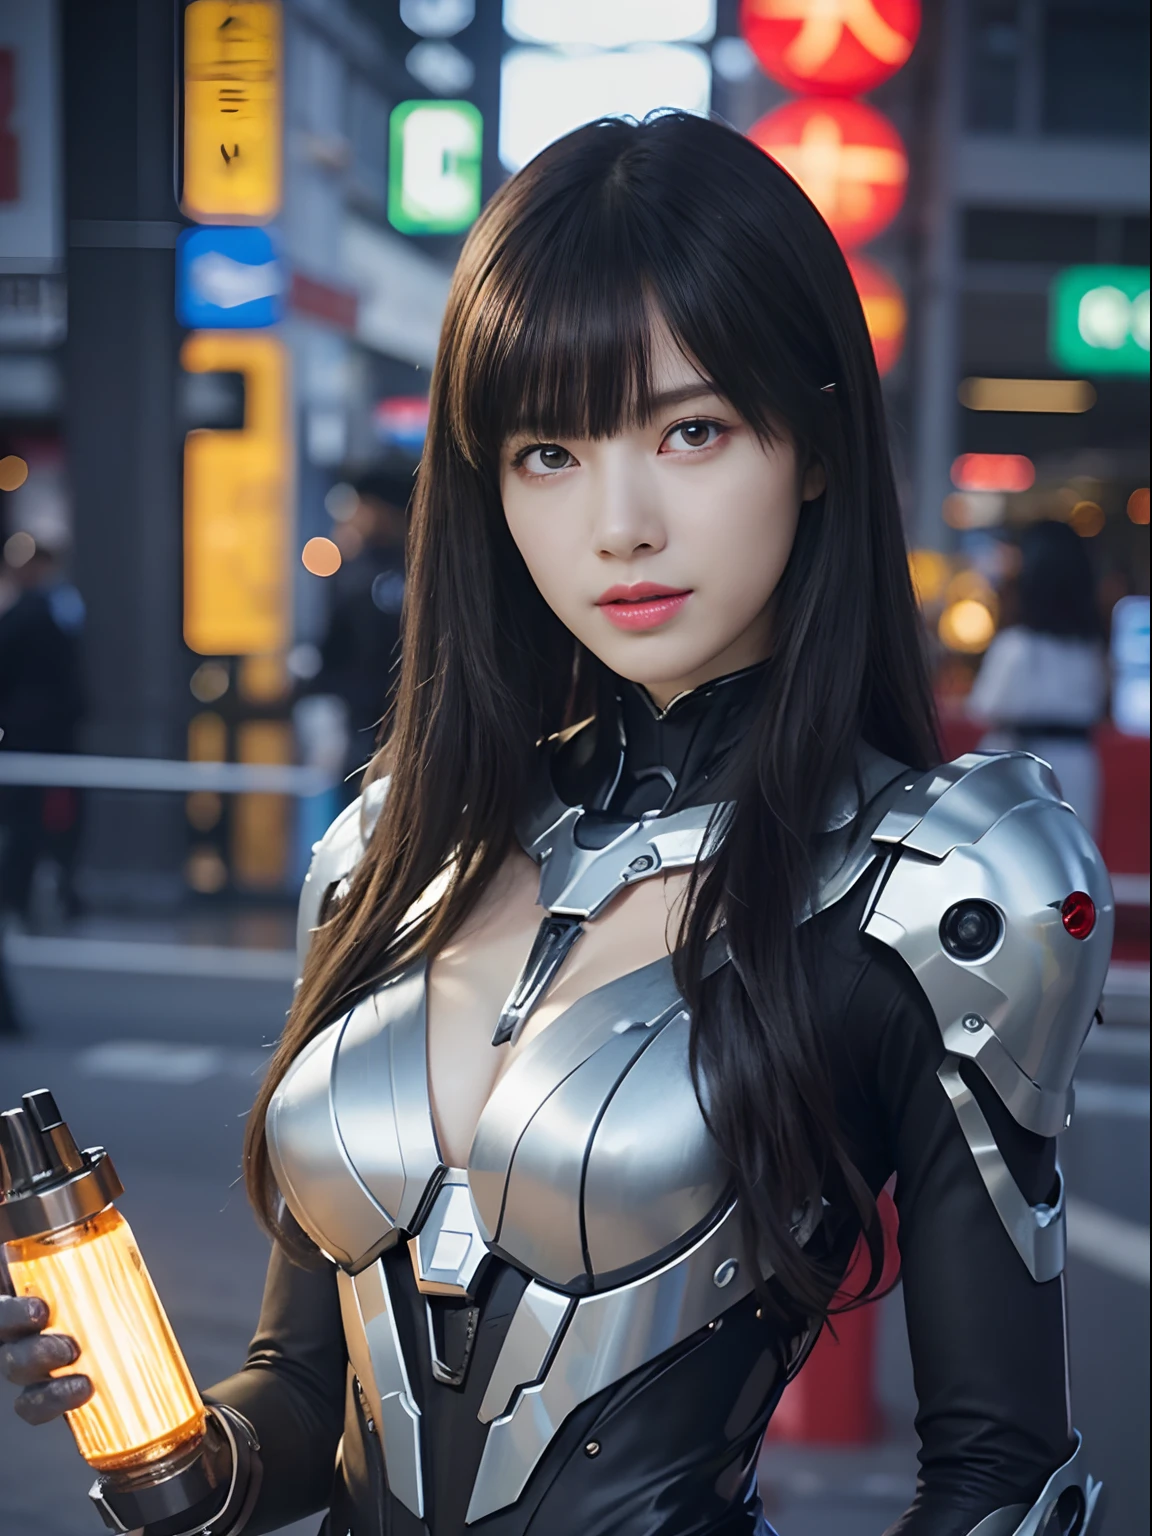 （機械ロボット兵士と戦う）、最高品質、傑作、超高解像度、(セクシーポーズ),（未来的な透明サンバイザーを着用）、(フォトリアリスティック:1.4)、RAW写真、女の子1人、黒髪、輝く肌、((1 機械少女))、((超リアルなディテール))、ポートレート、（小型LEDランプ）、体全体に光るワイヤーチューブ、グローバルイルミネーション、影、オクタンレンダリング、8k、脇の下、超鋭利な、巨大 、小型LEDランプ、胸の谷間に生肌が露出、金属、チューブに接続された血管、赤いボディスーツ、脇の下、サイバーパンクシティの背景、複雑な装飾の詳細、日本の詳細、非常に複雑な詳細、リアルな光、CGSoationトレンド、青い目、輝く目、カメラに向かって、ネオンの詳細、（勇者のヘルメット）、機械の手足、管に接続された血管背中に取り付けられた機械的な椎骨、首に機械的な頸椎を取り付ける、頭部に接続するワイヤーとケーブル、ガンダム、小型LEDランプ、トゥーストック、トゥーストック、